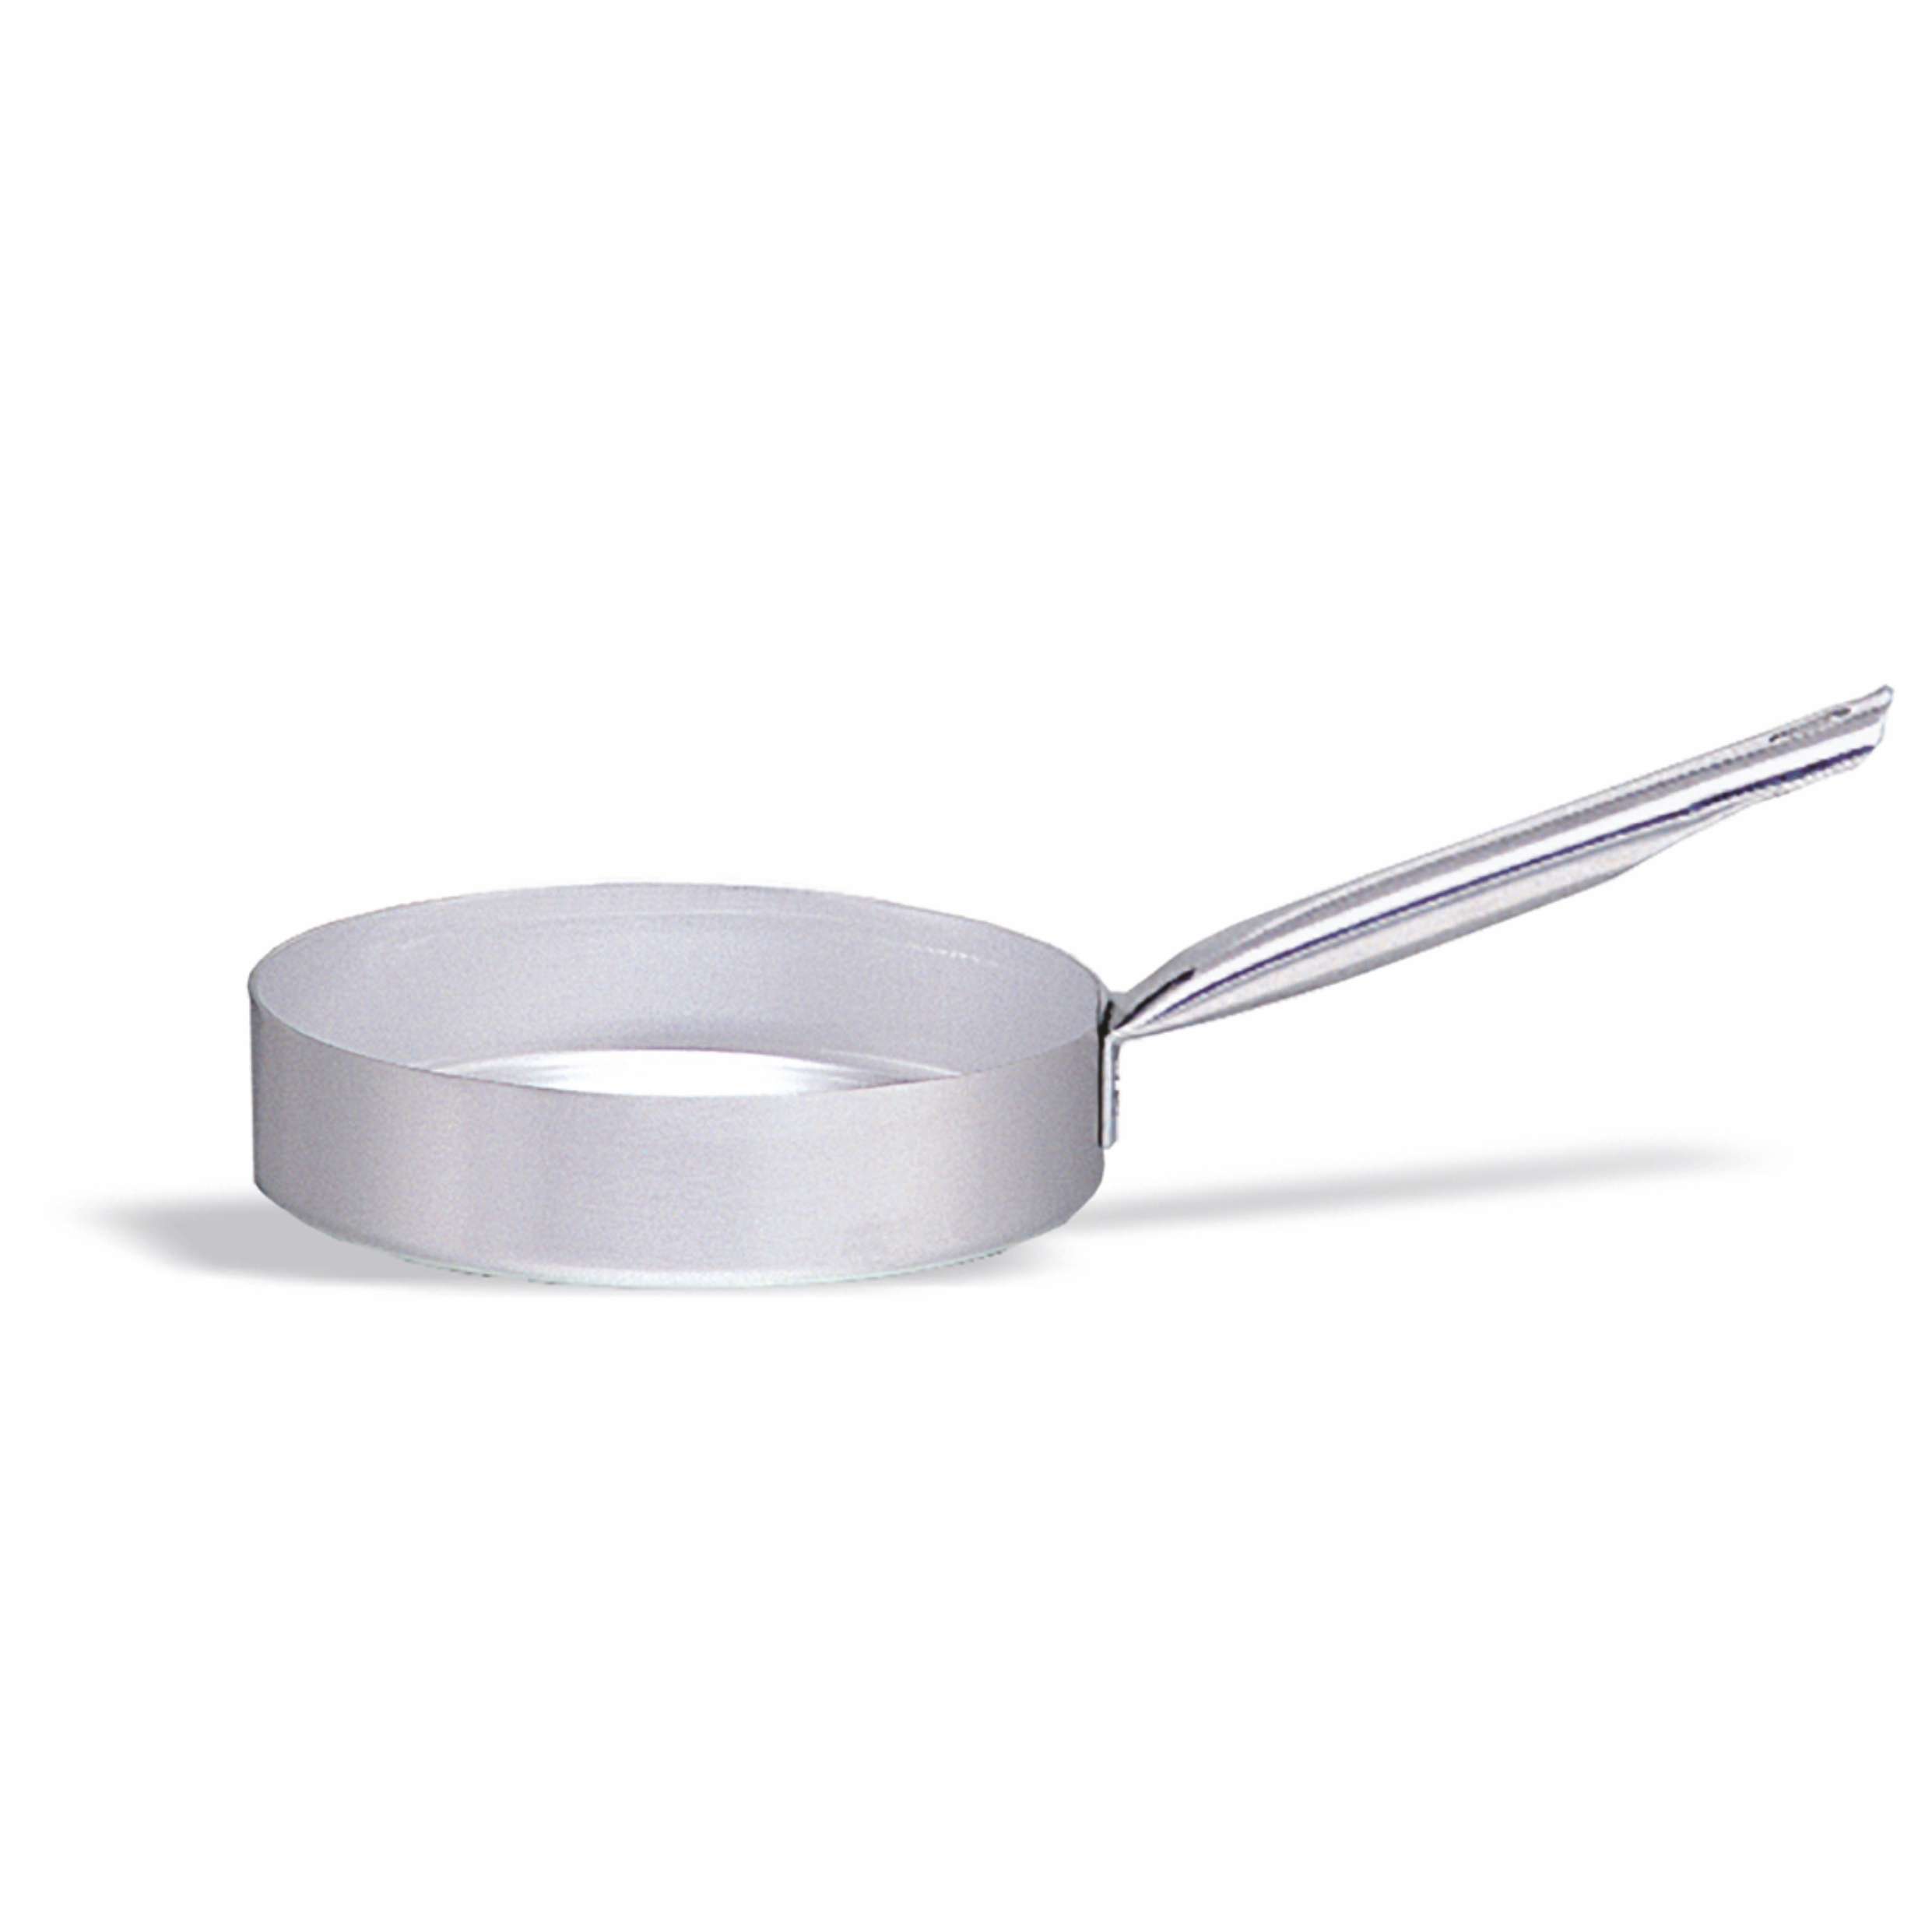 Casseruola in alluminio con manico – diametro 24 cm – 2,75 litri